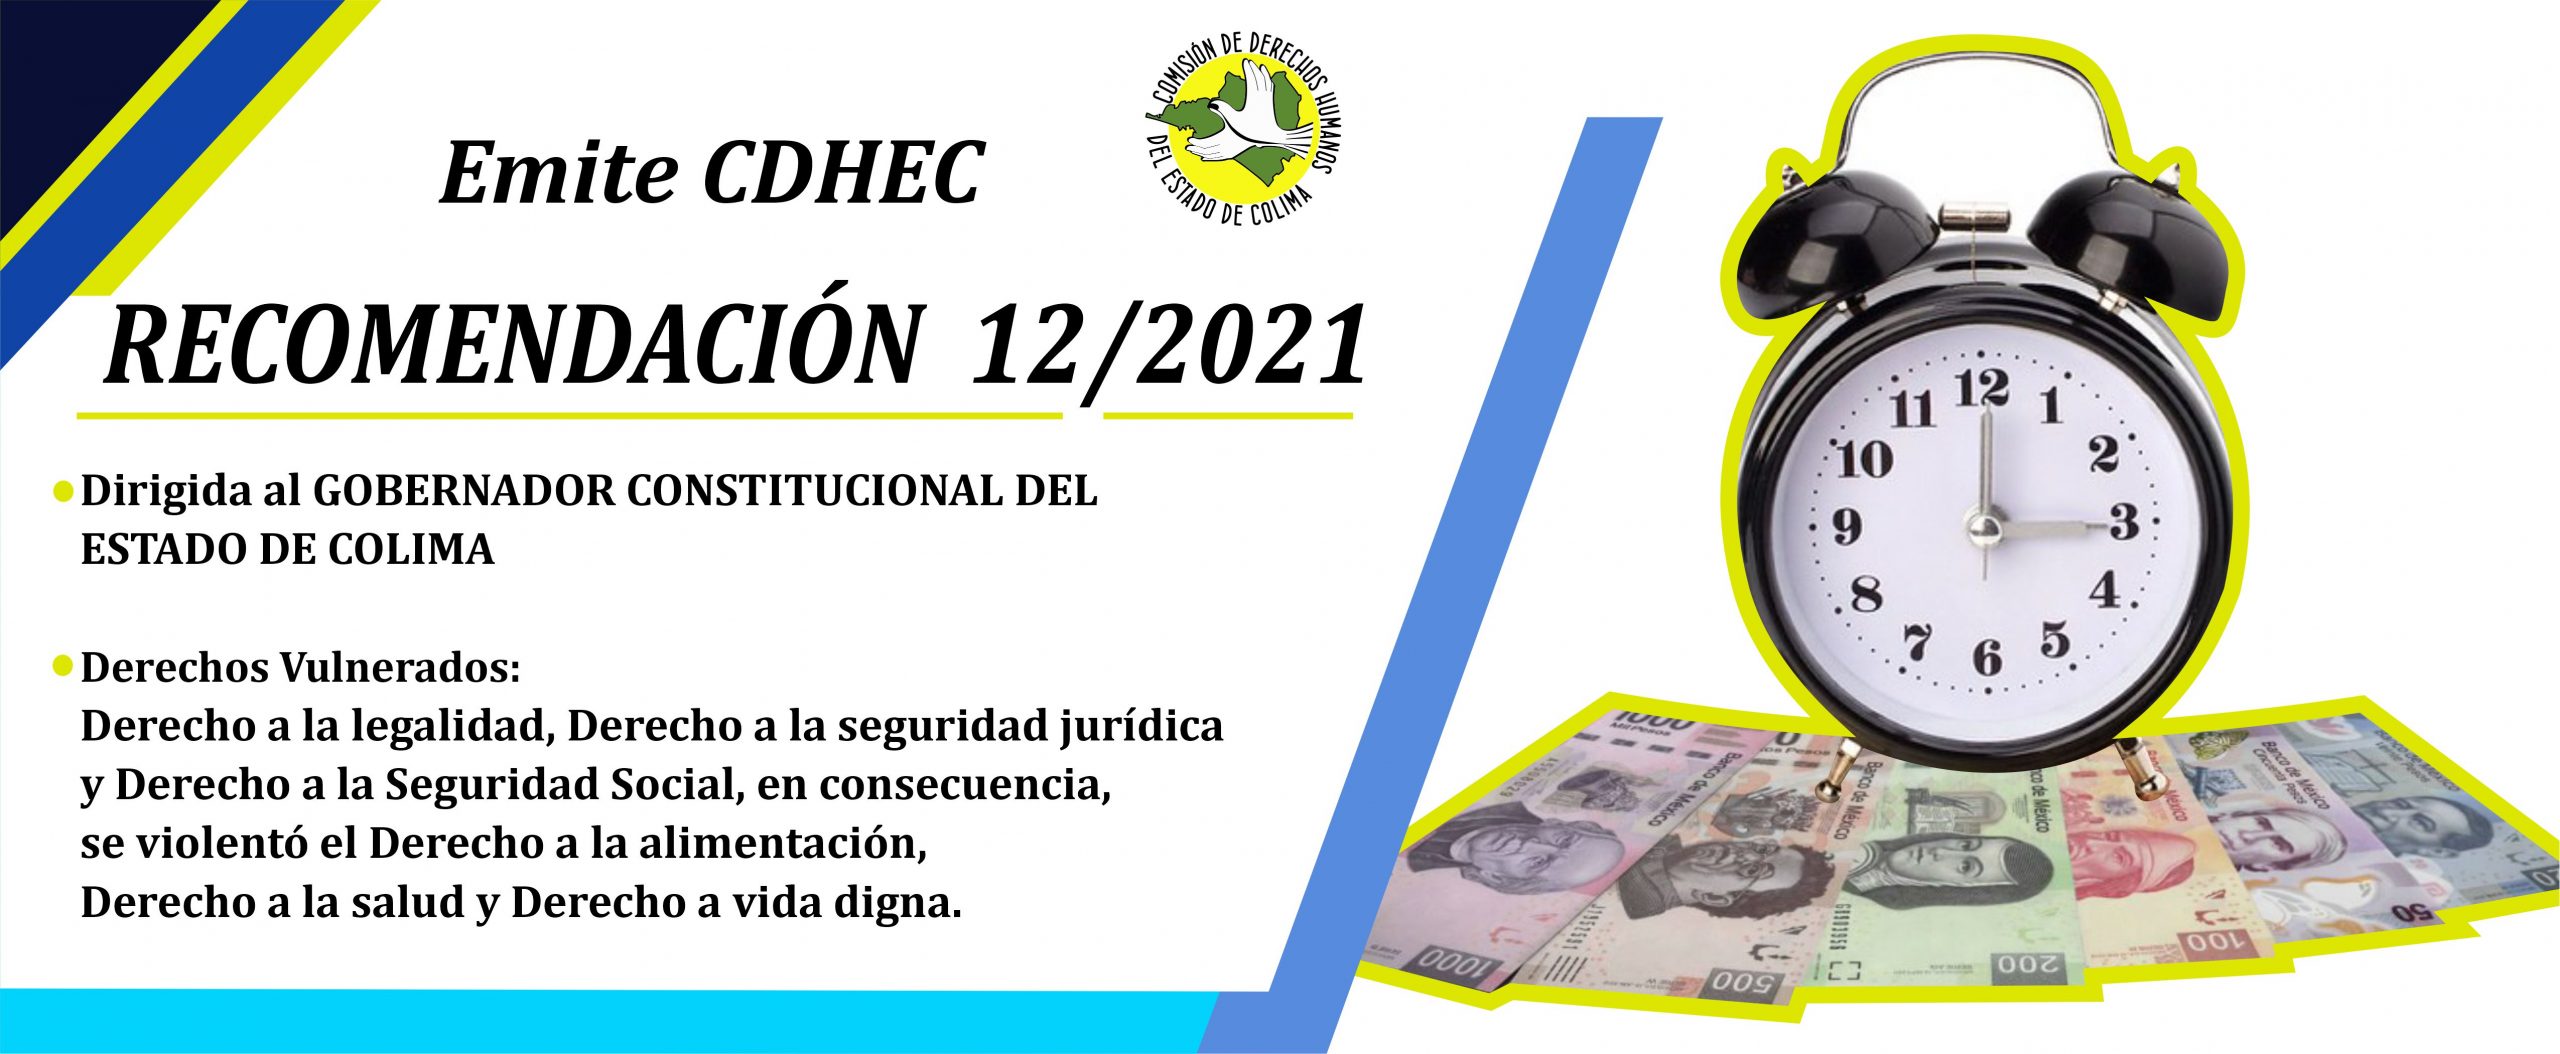 Emite CDHEC Recomendación al Gobernador Constitucional del Estado de Colima